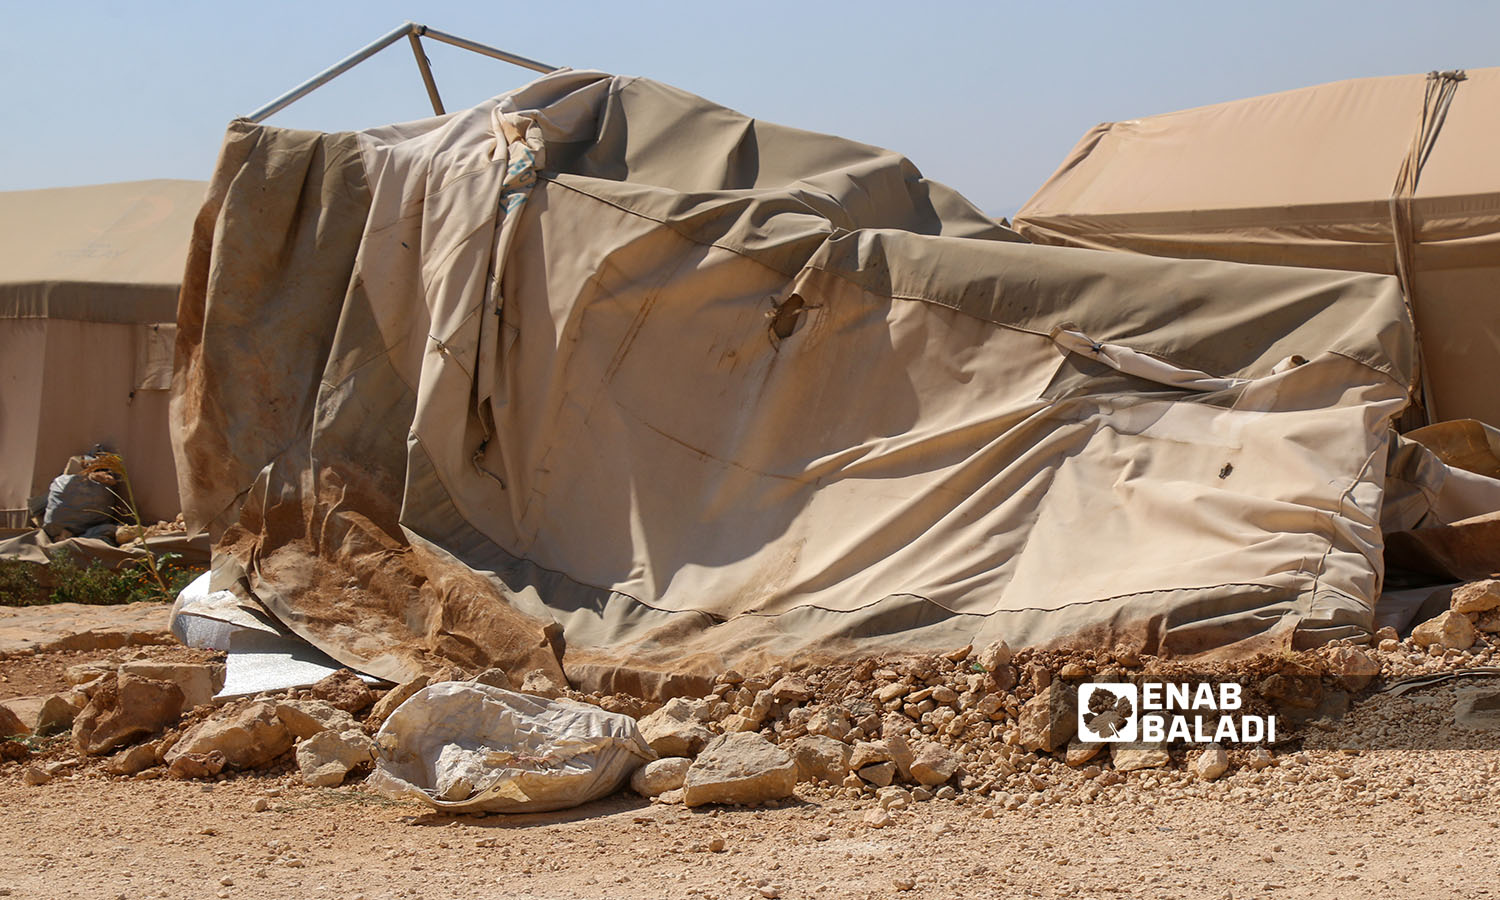 أضرار لحقت بالأهالي ضمن مخيم الجبل في منطقة الشيخ بحر نتيجة العاصفة الهوائية (عنب بلدي- إياد عبد الجواد)